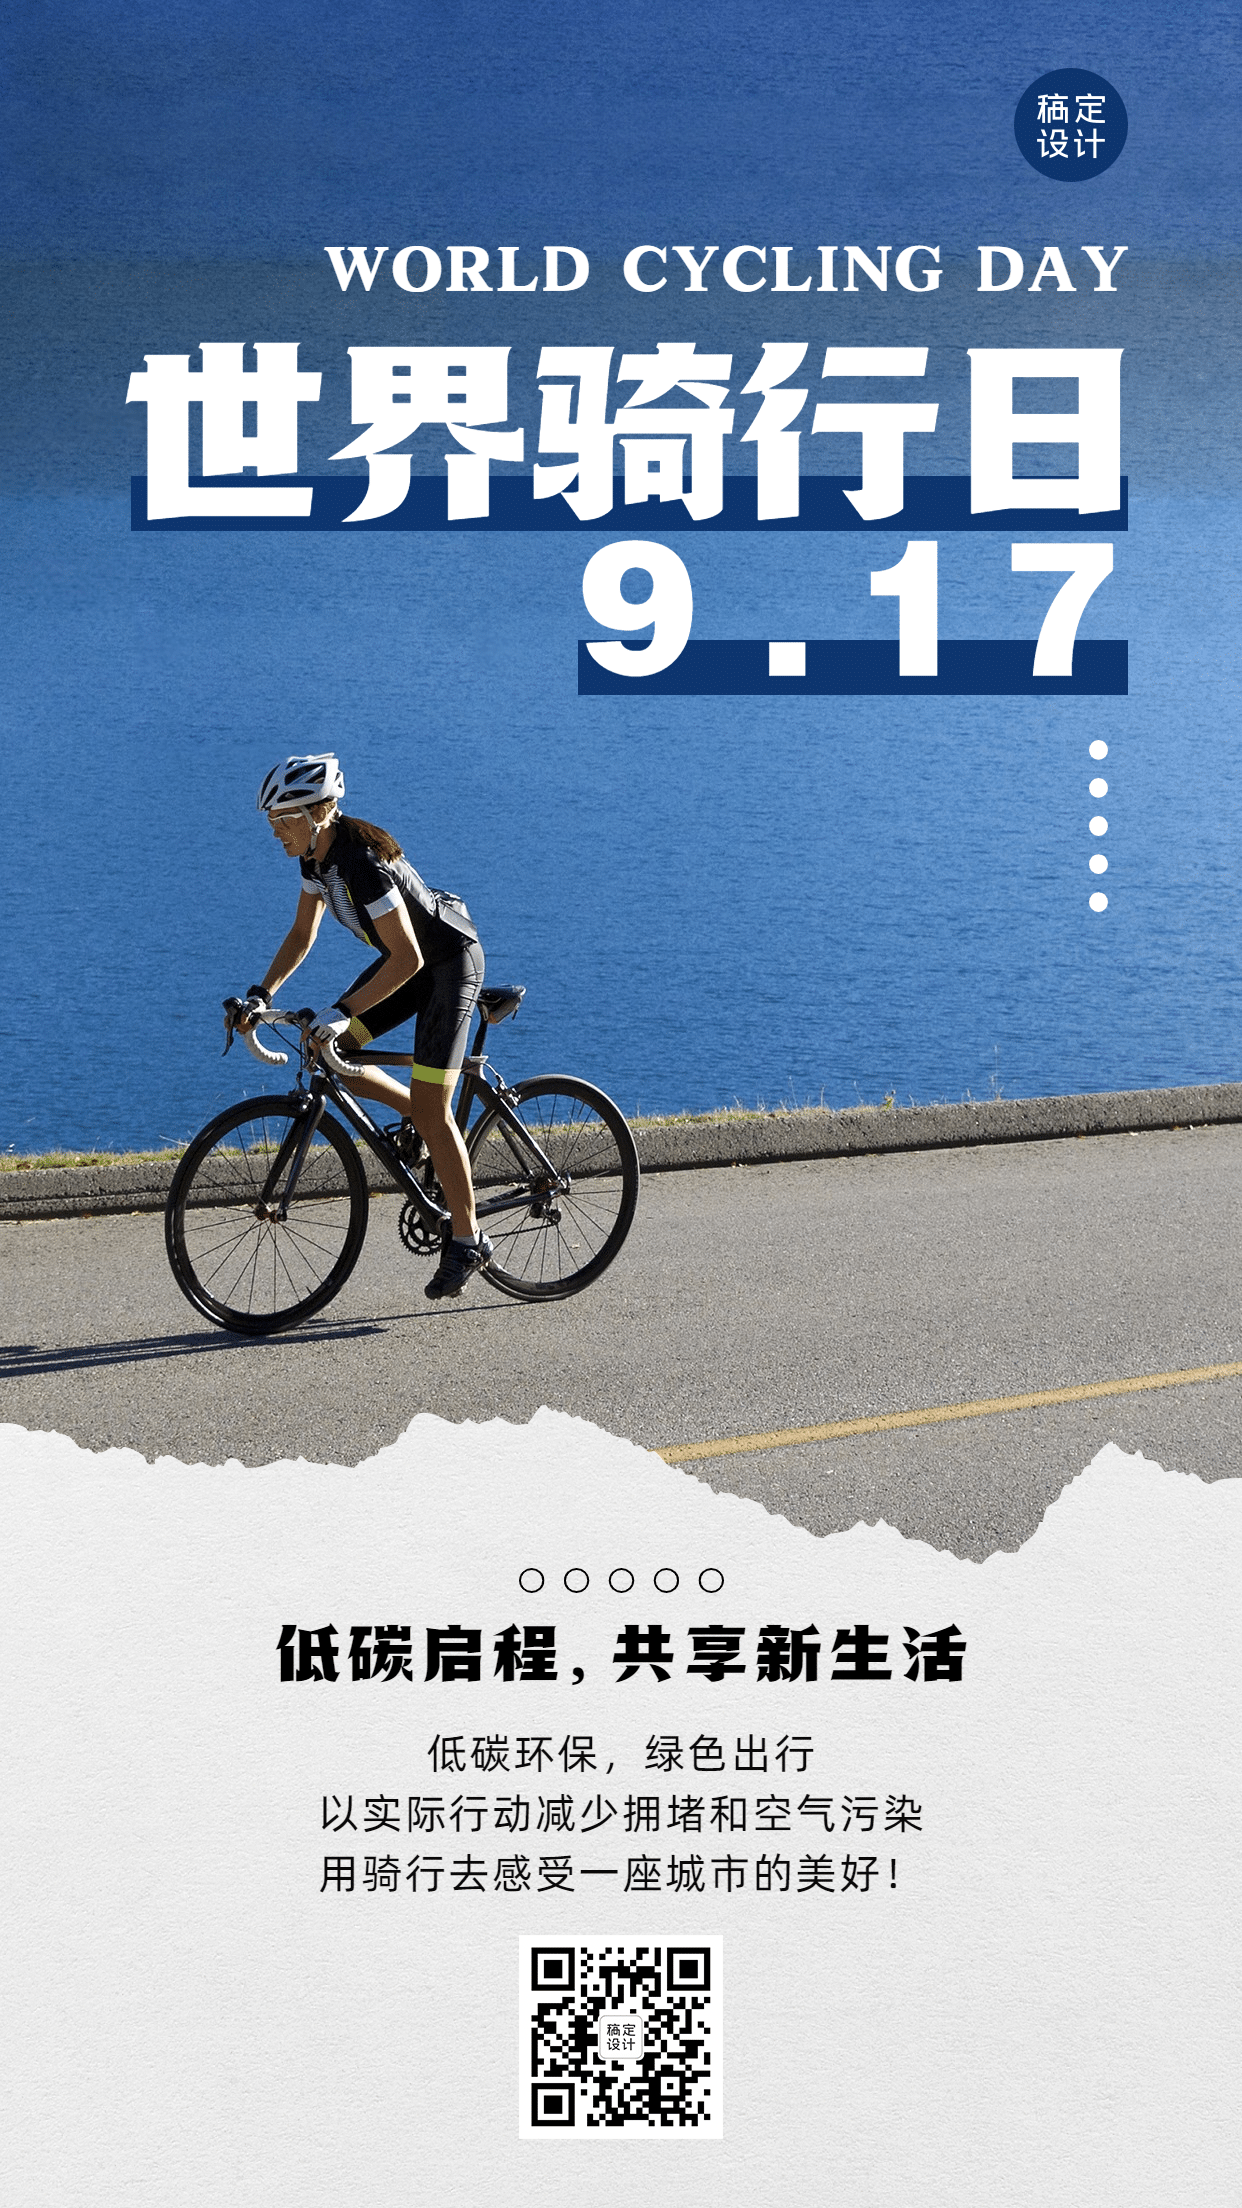 世界骑行日低碳环保出行宣传实景海报预览效果